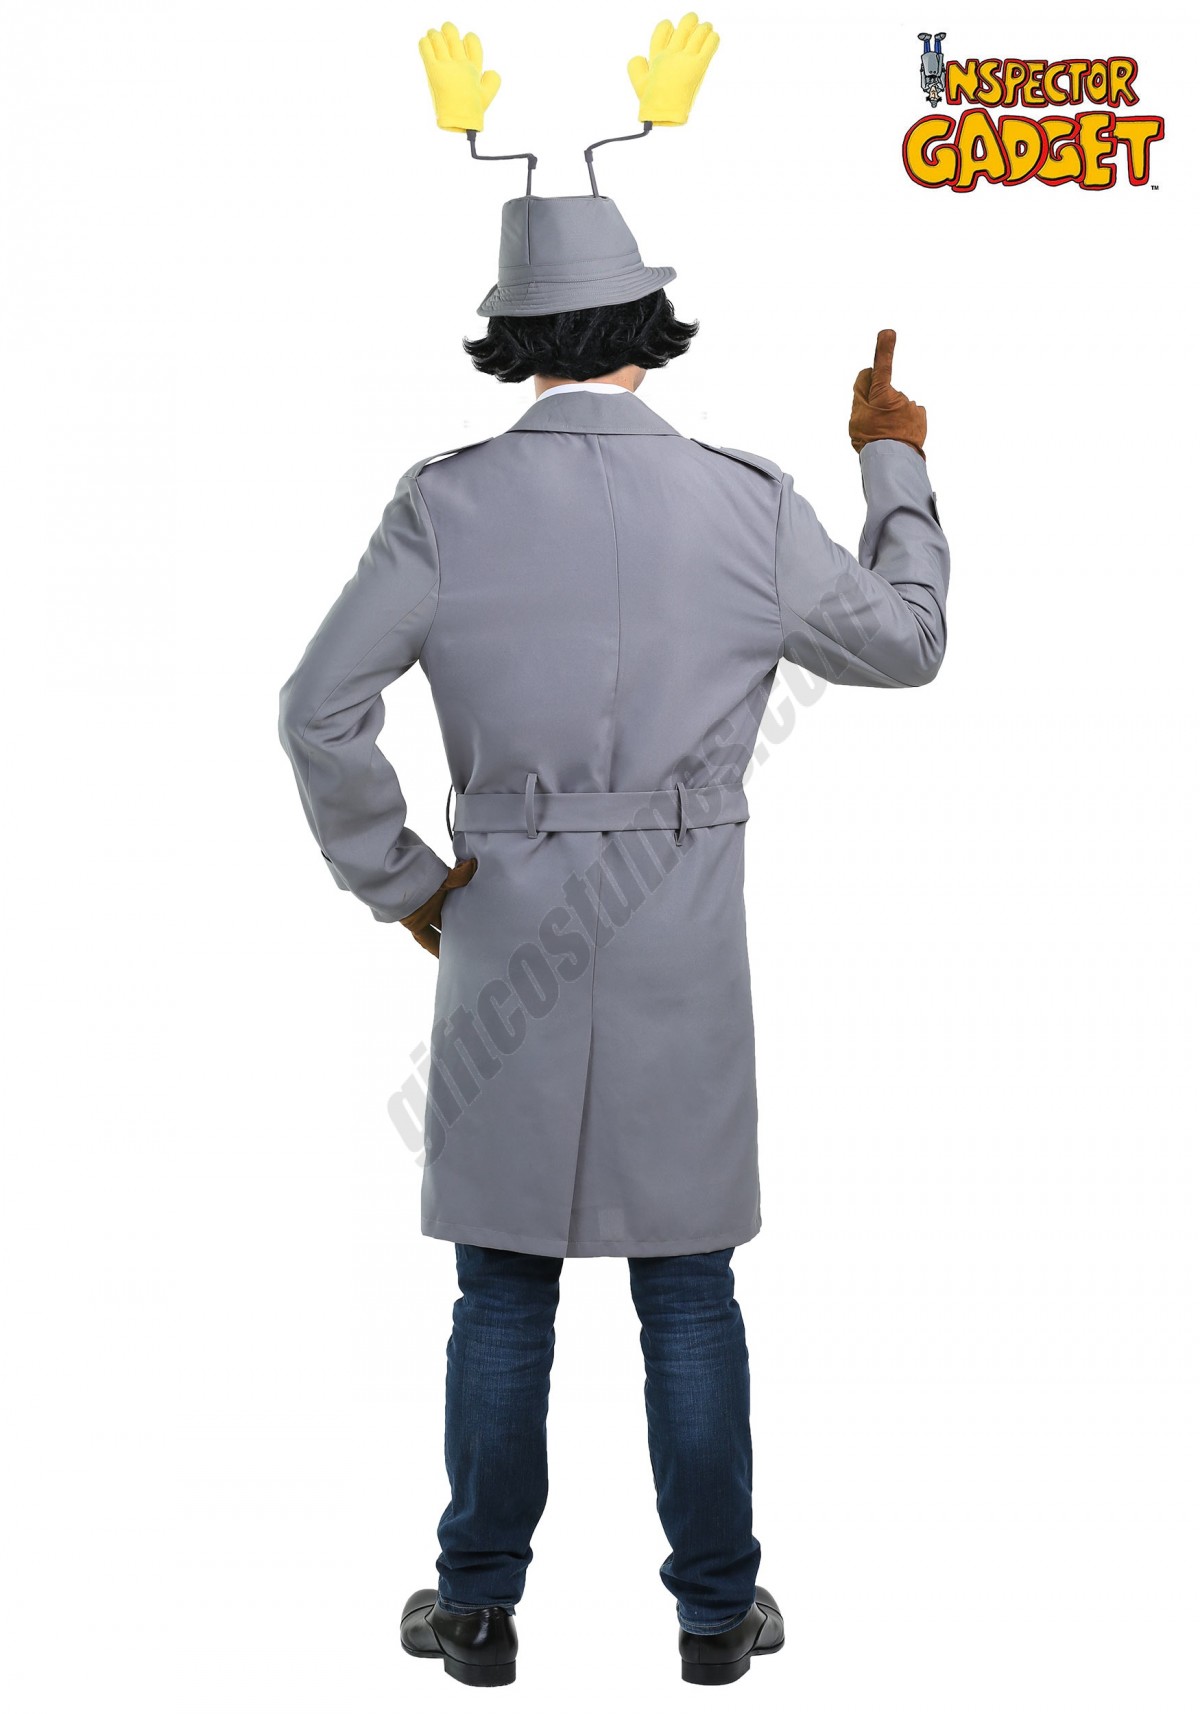  Inspector Gadget Plus Size Men's Costume Promotions - -1